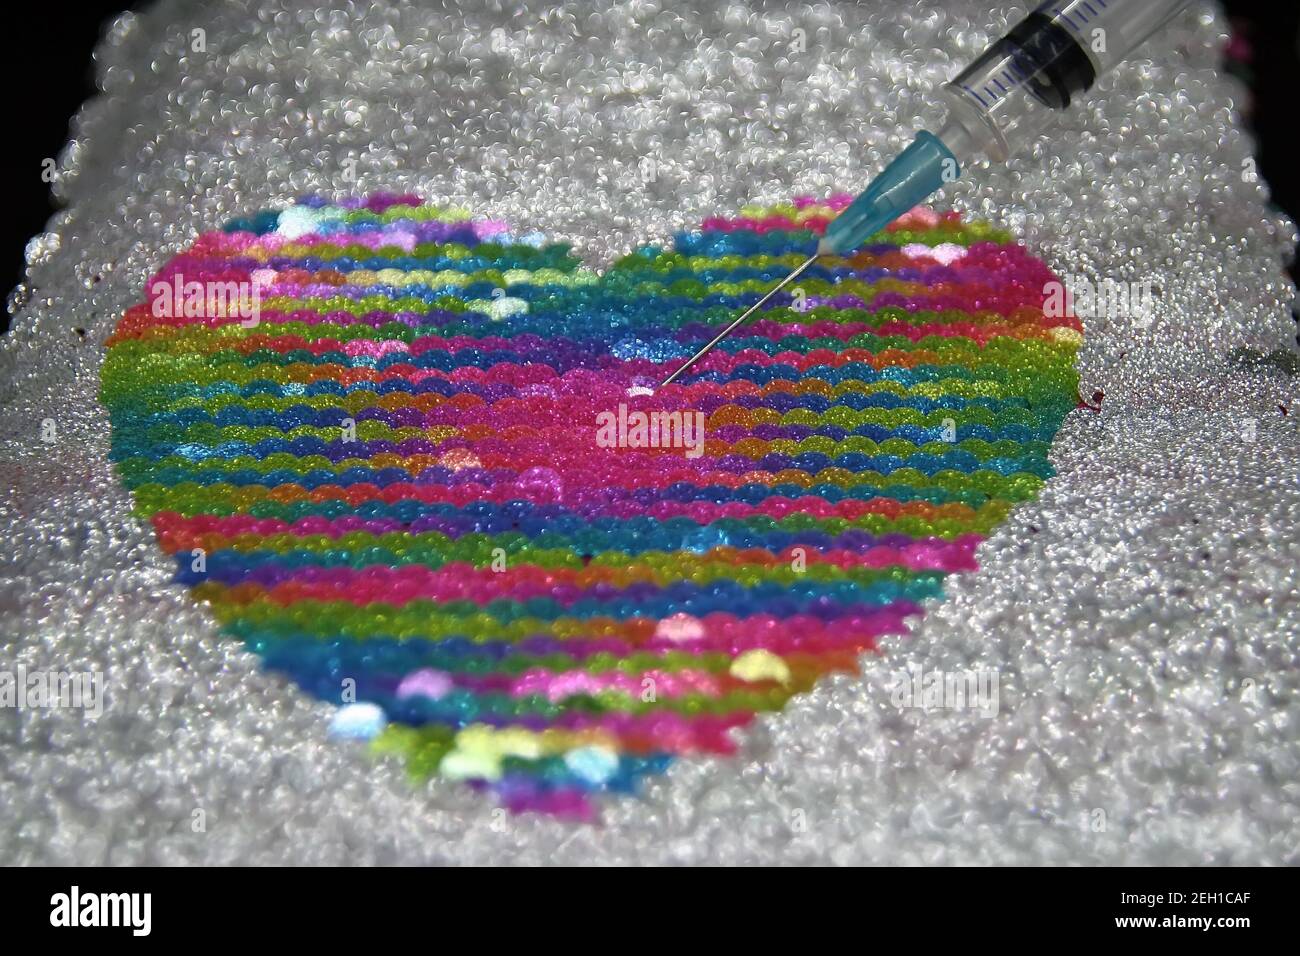 Medizinische Spritze und ein Herz. Herzförmiges Objekt und eine Heilung. Stockfoto